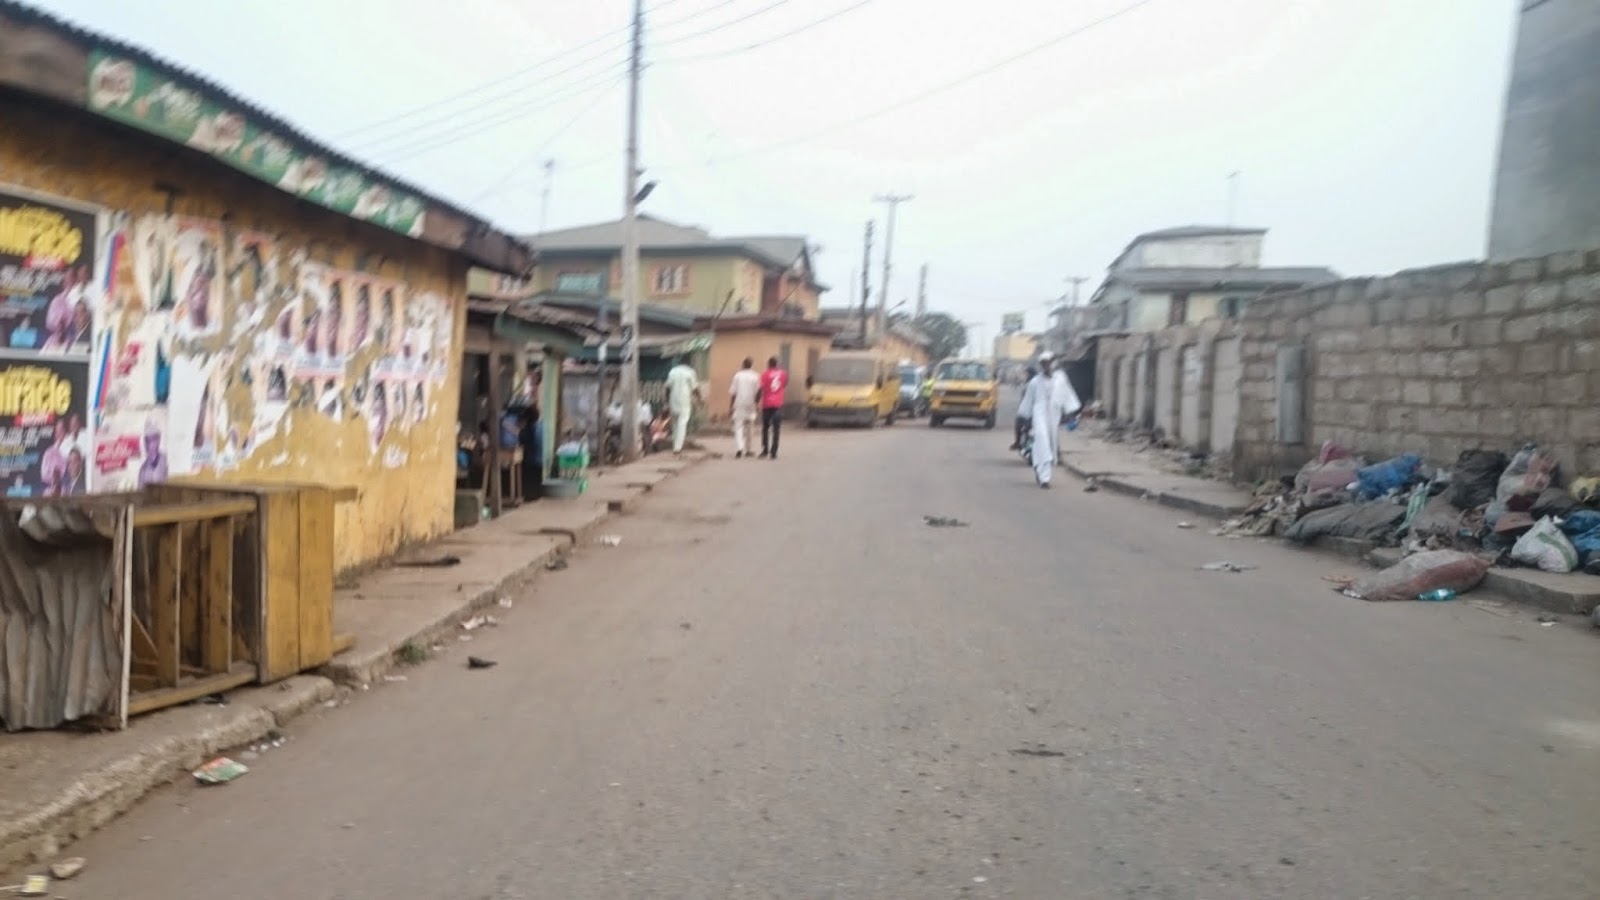 Filthy environment, Iyana Ipaja, Lagos